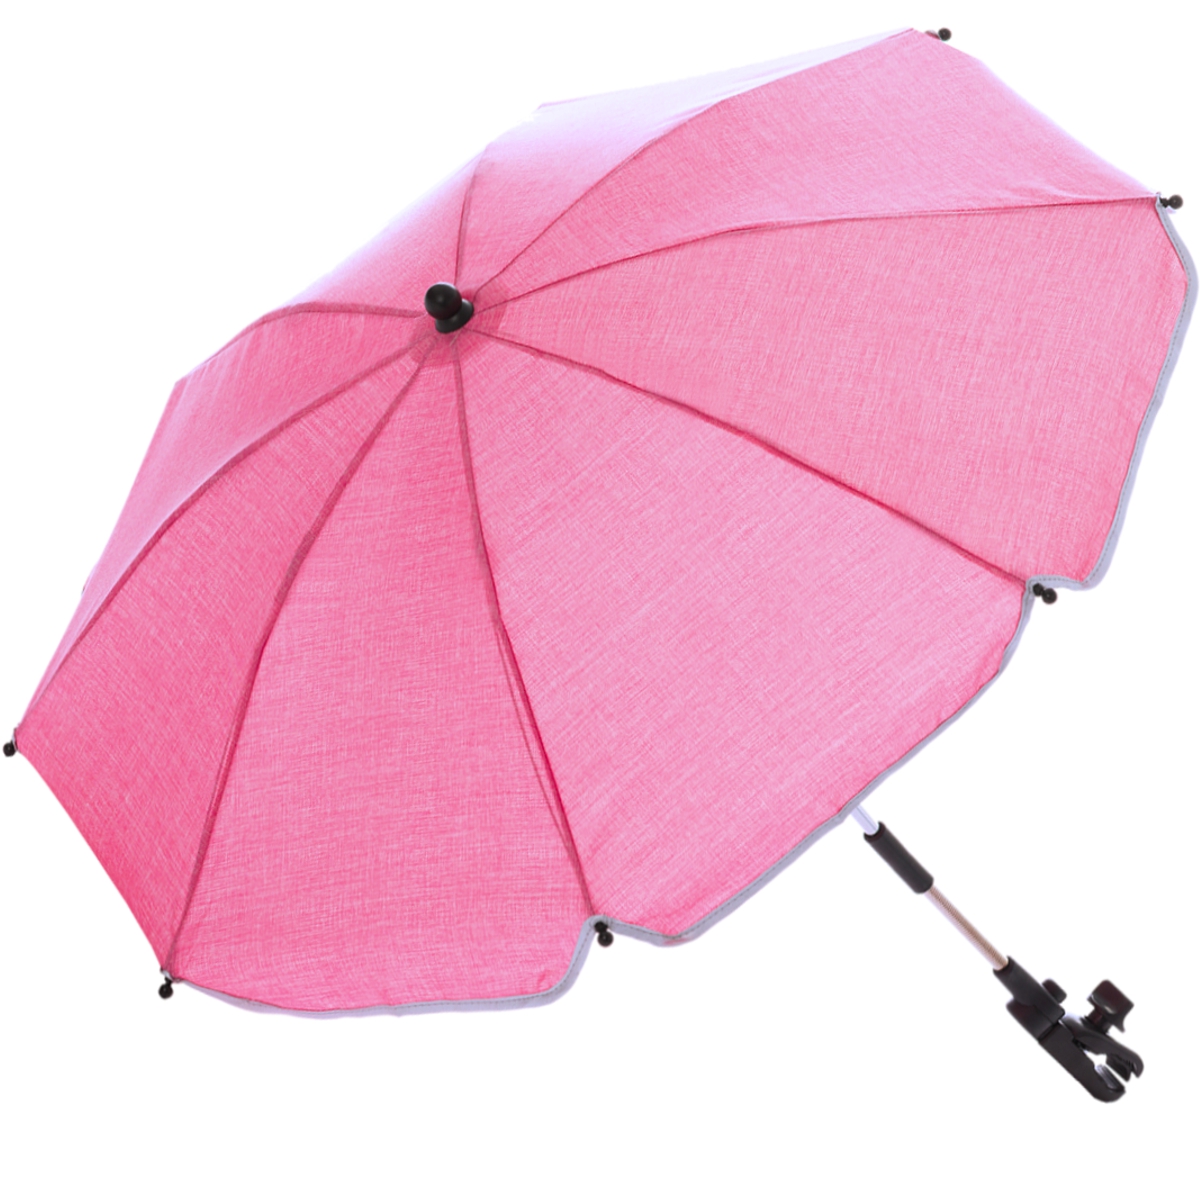 Sonnenschirm für Kinderwagen Buggy Schirm Sonnenschutz Baby rot verstellbar 